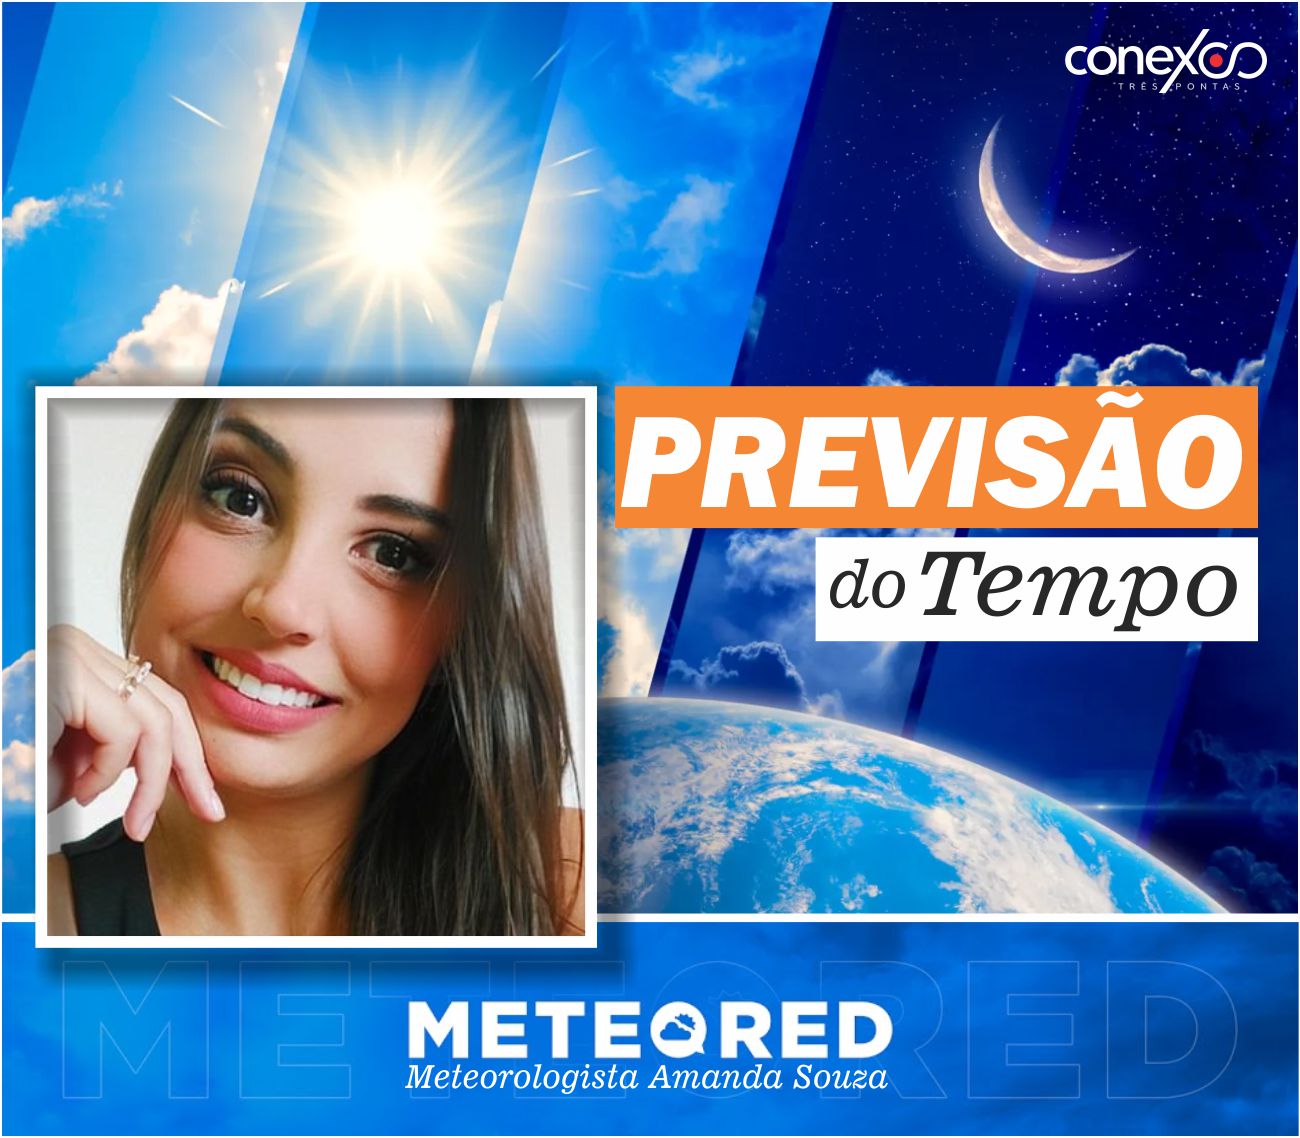 Confira a Previsão do Tempo com a Meteorologista Amanda Souza